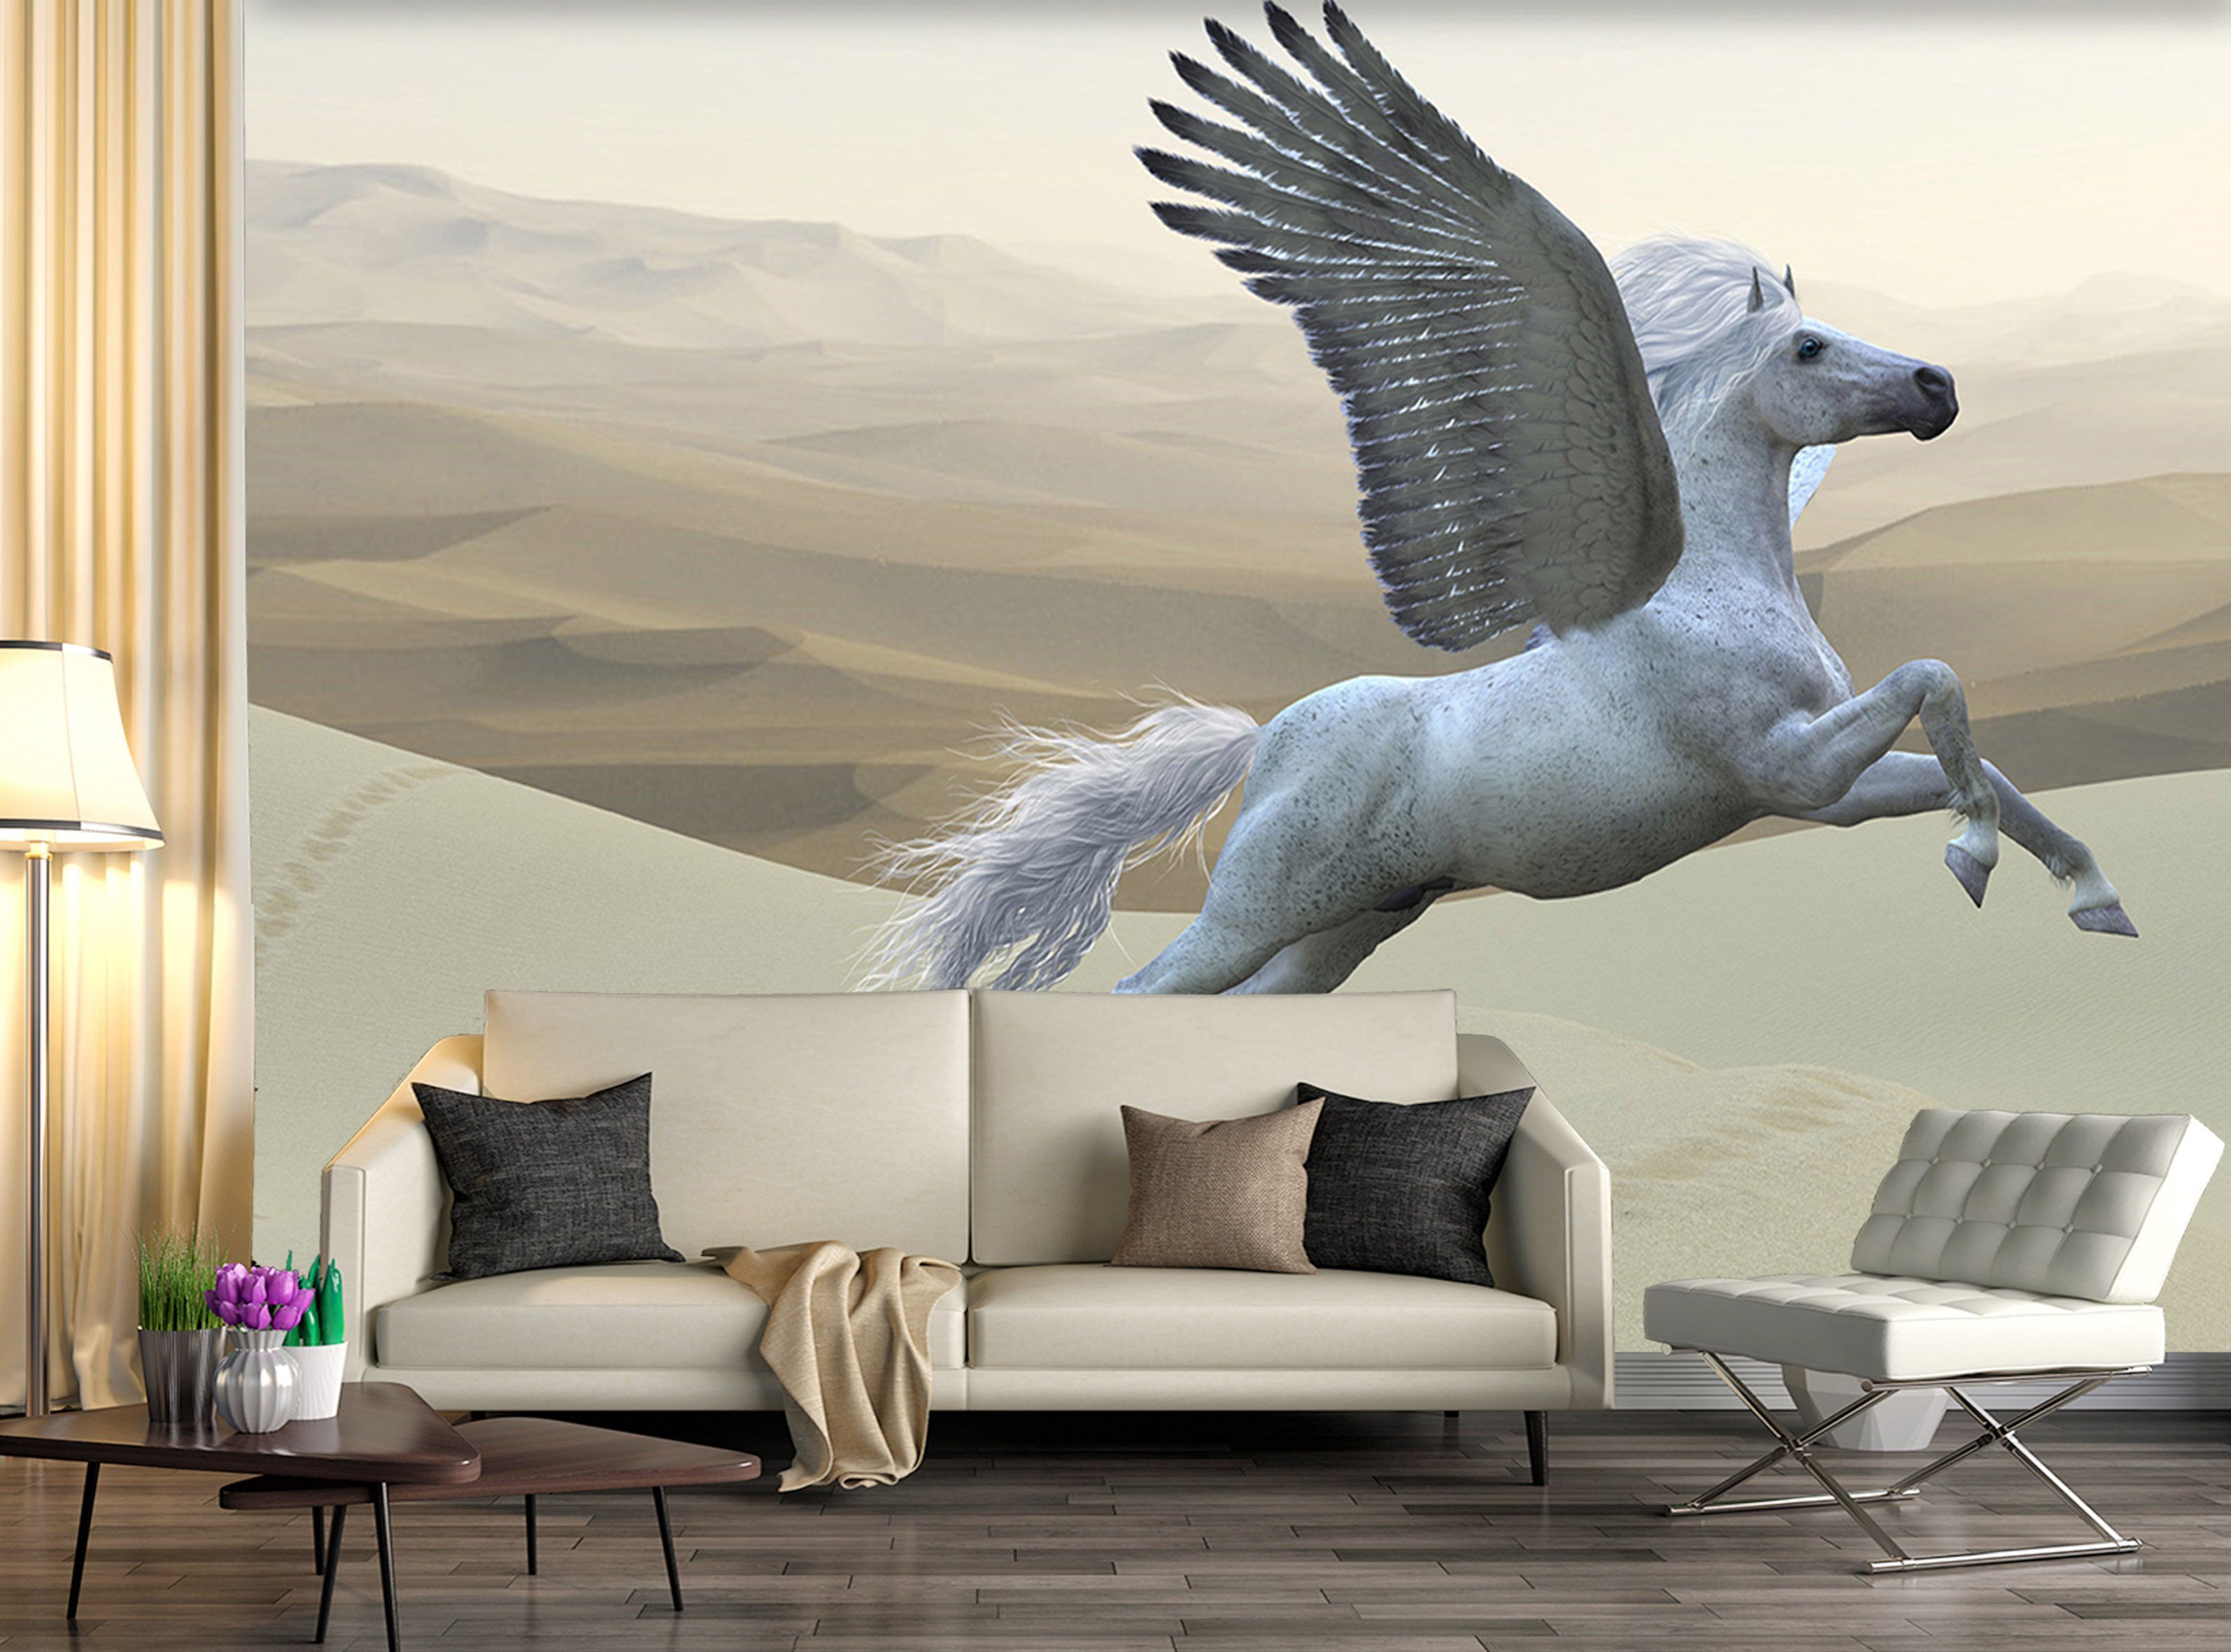 3D Flying Wing Unicorn 199 Wallpaper AJ Wallpaper 